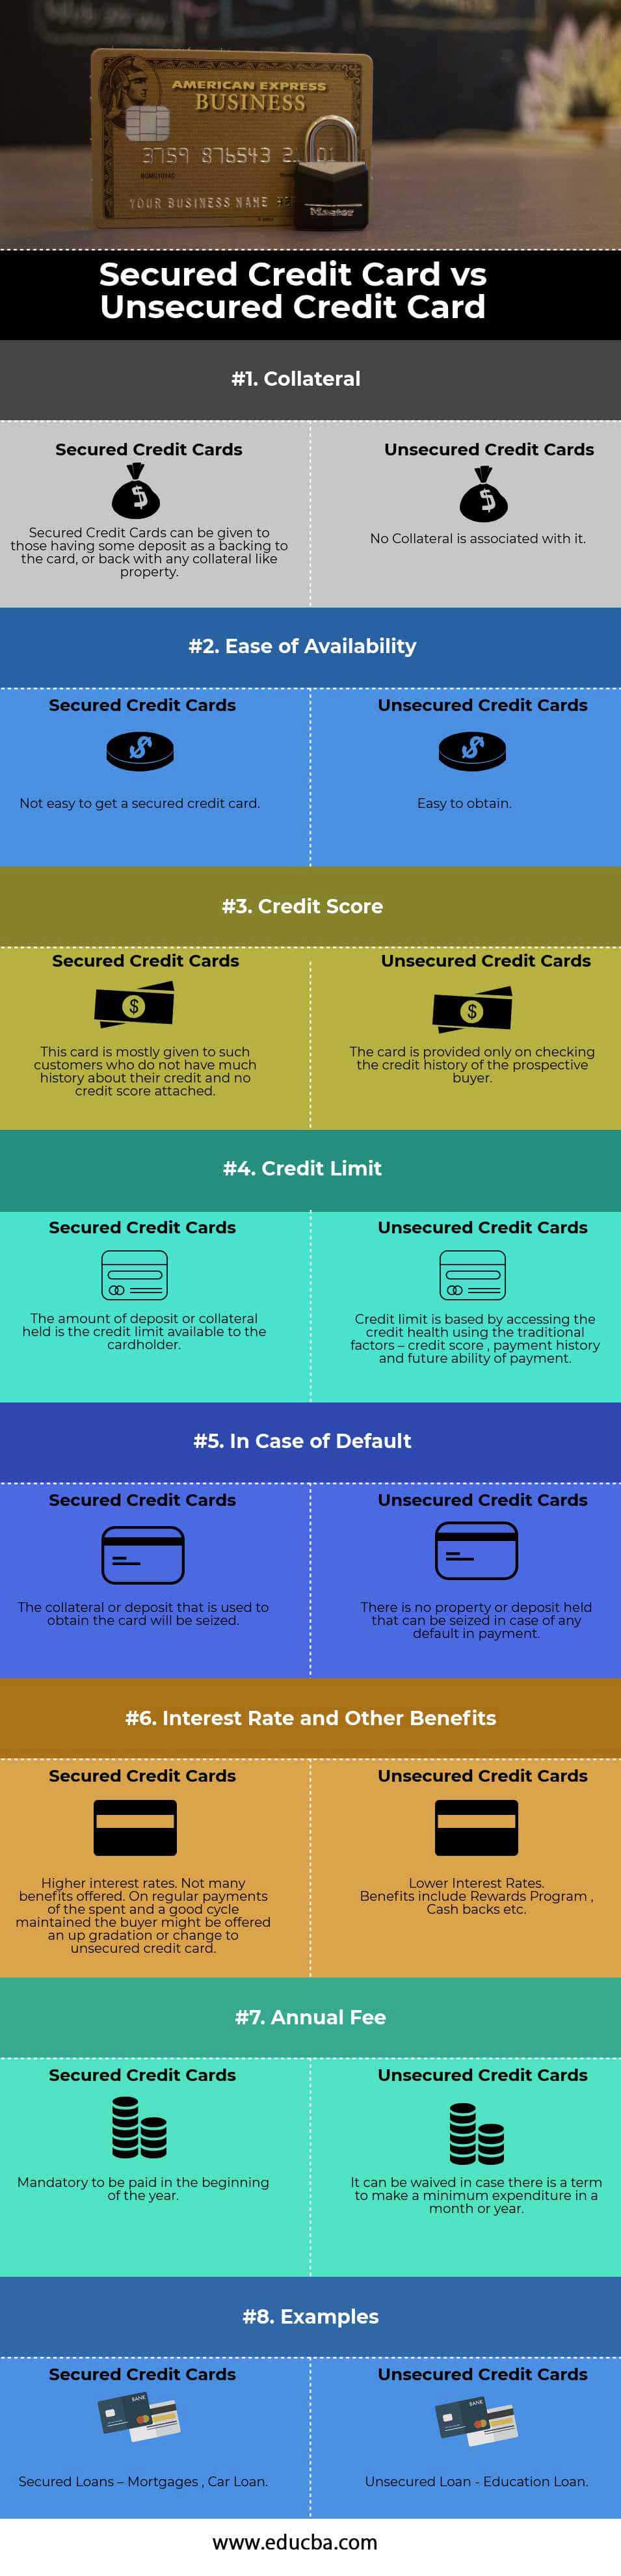 Tarjeta de crédito asegurada versus no asegurada